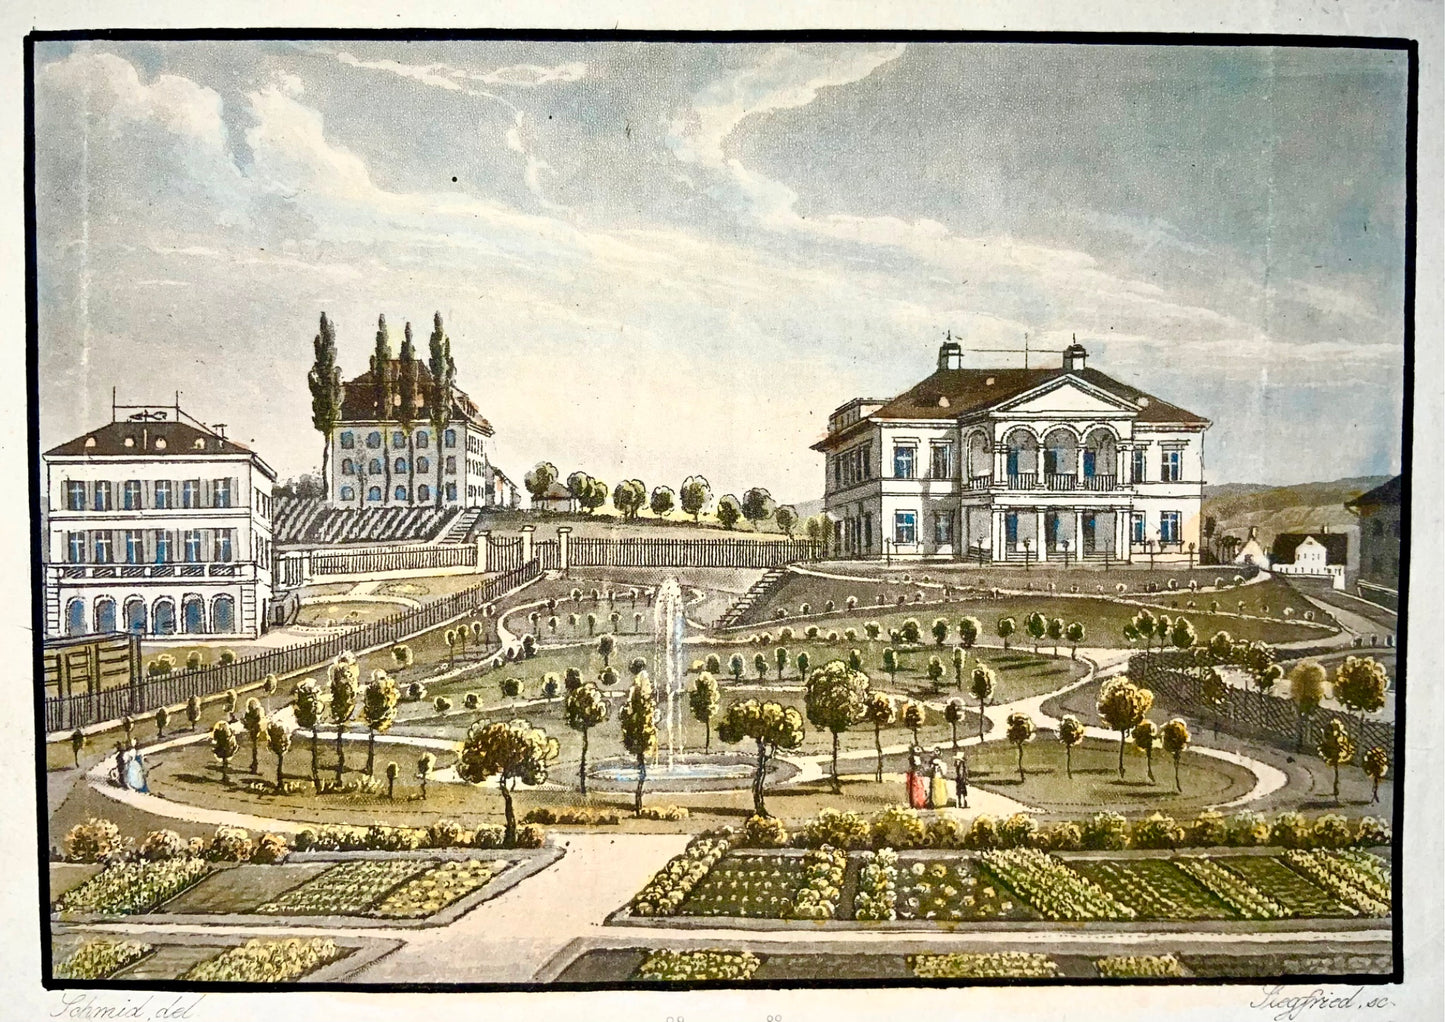 1840c Parc Schönbühl, Zurich, Suisse, Schmidt, aquatinte, couleur à la main